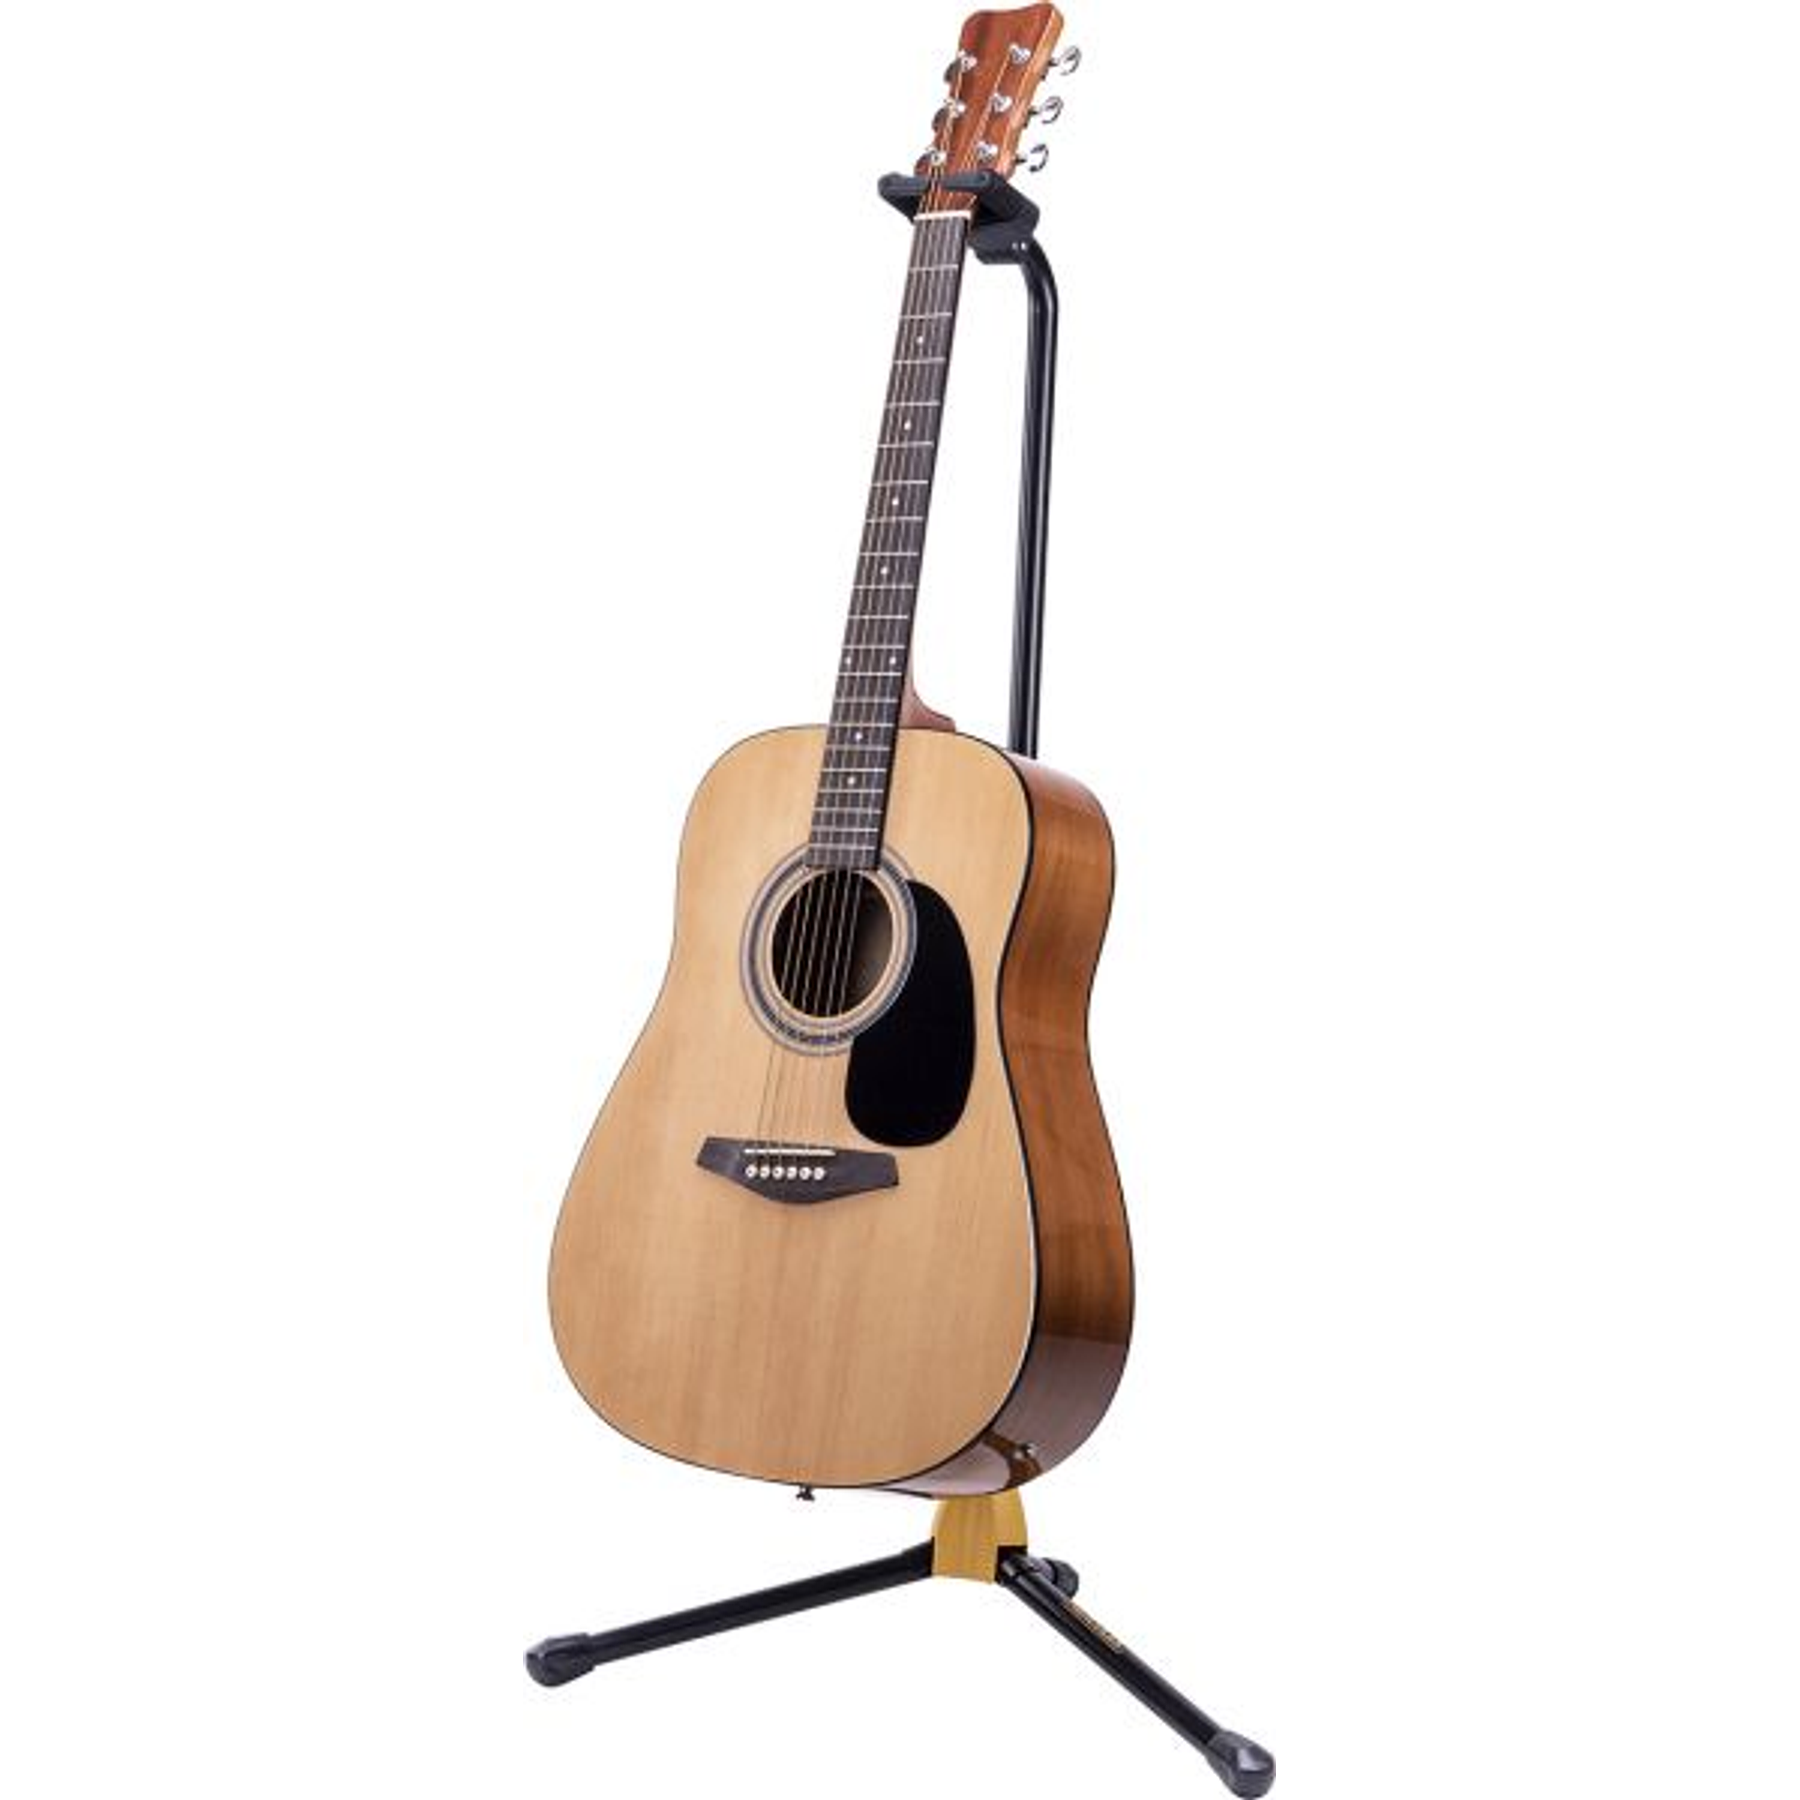 Atril Para Guitarra/Bajo Hercules Gs412B C/Seguro